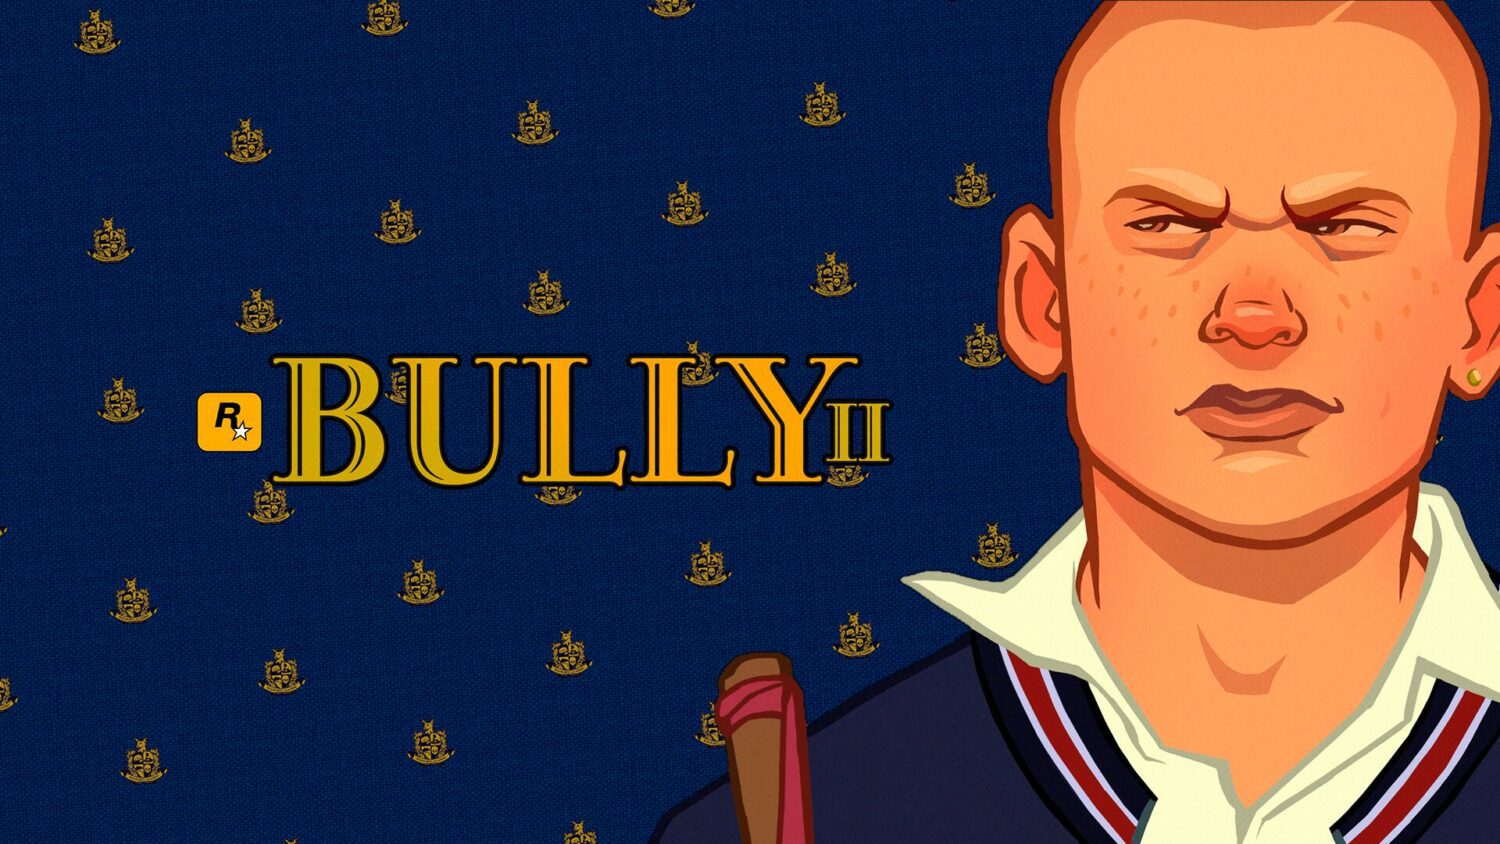 Bully 2 teria sido cancelado em 2017 em prol do desenvolvimento de RDR2 e  GTA VI [RUMOR]